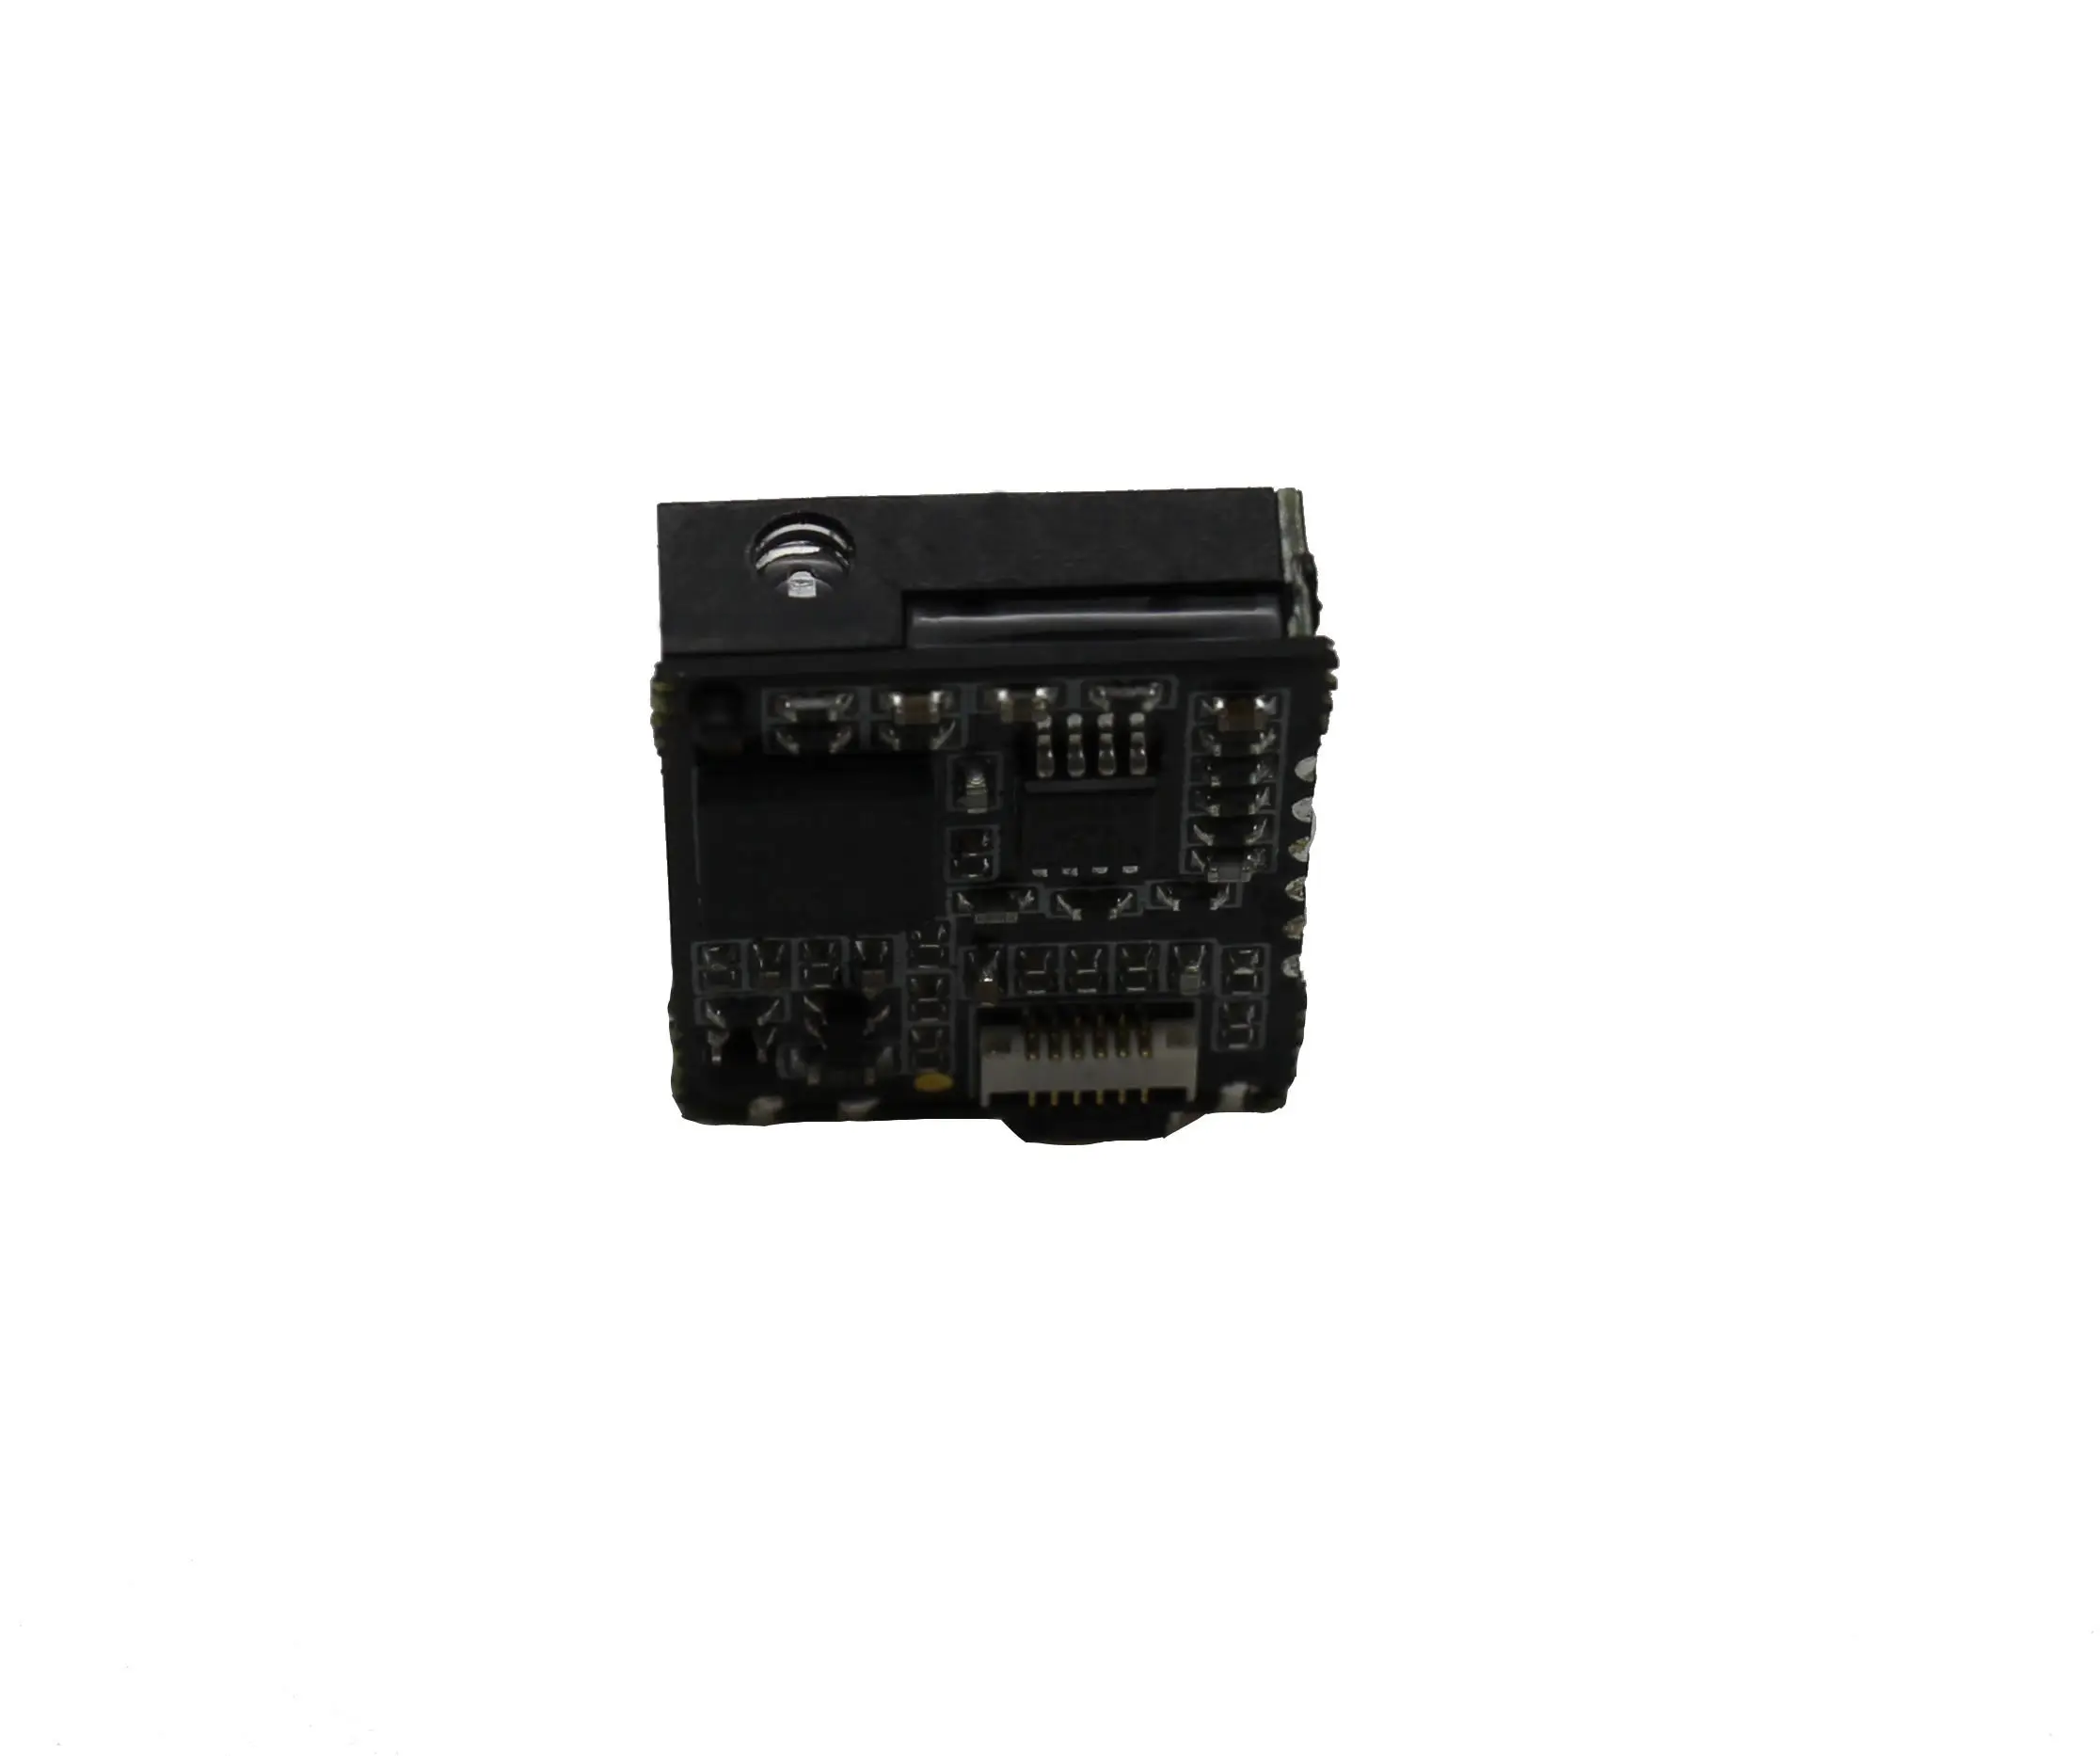 EVAWGIB — module de lecteur de codes à barres, Module de lecteur de codes à barres, lumière rouge Visible, capteur CCD 1D, Auto-induction,